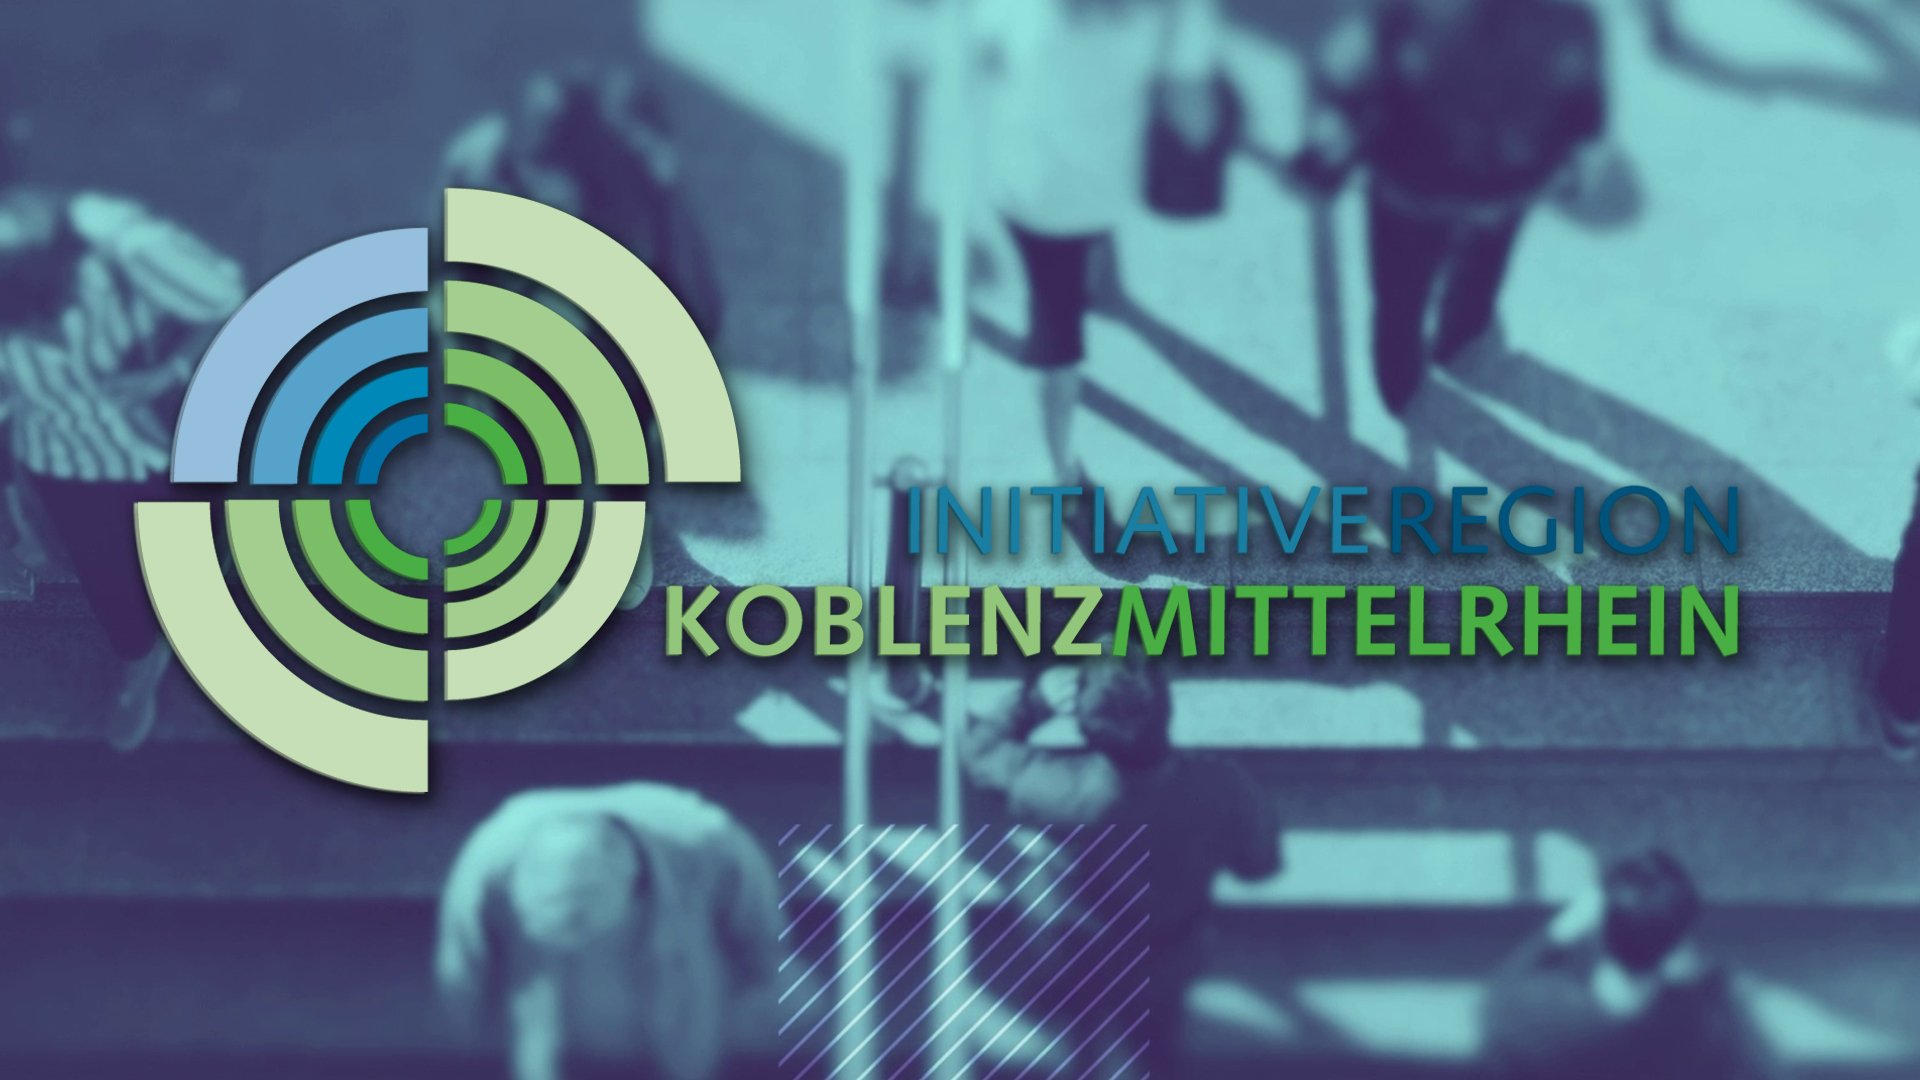 Regiopol-TV | Initiative Region Koblenz-Mittelrhein